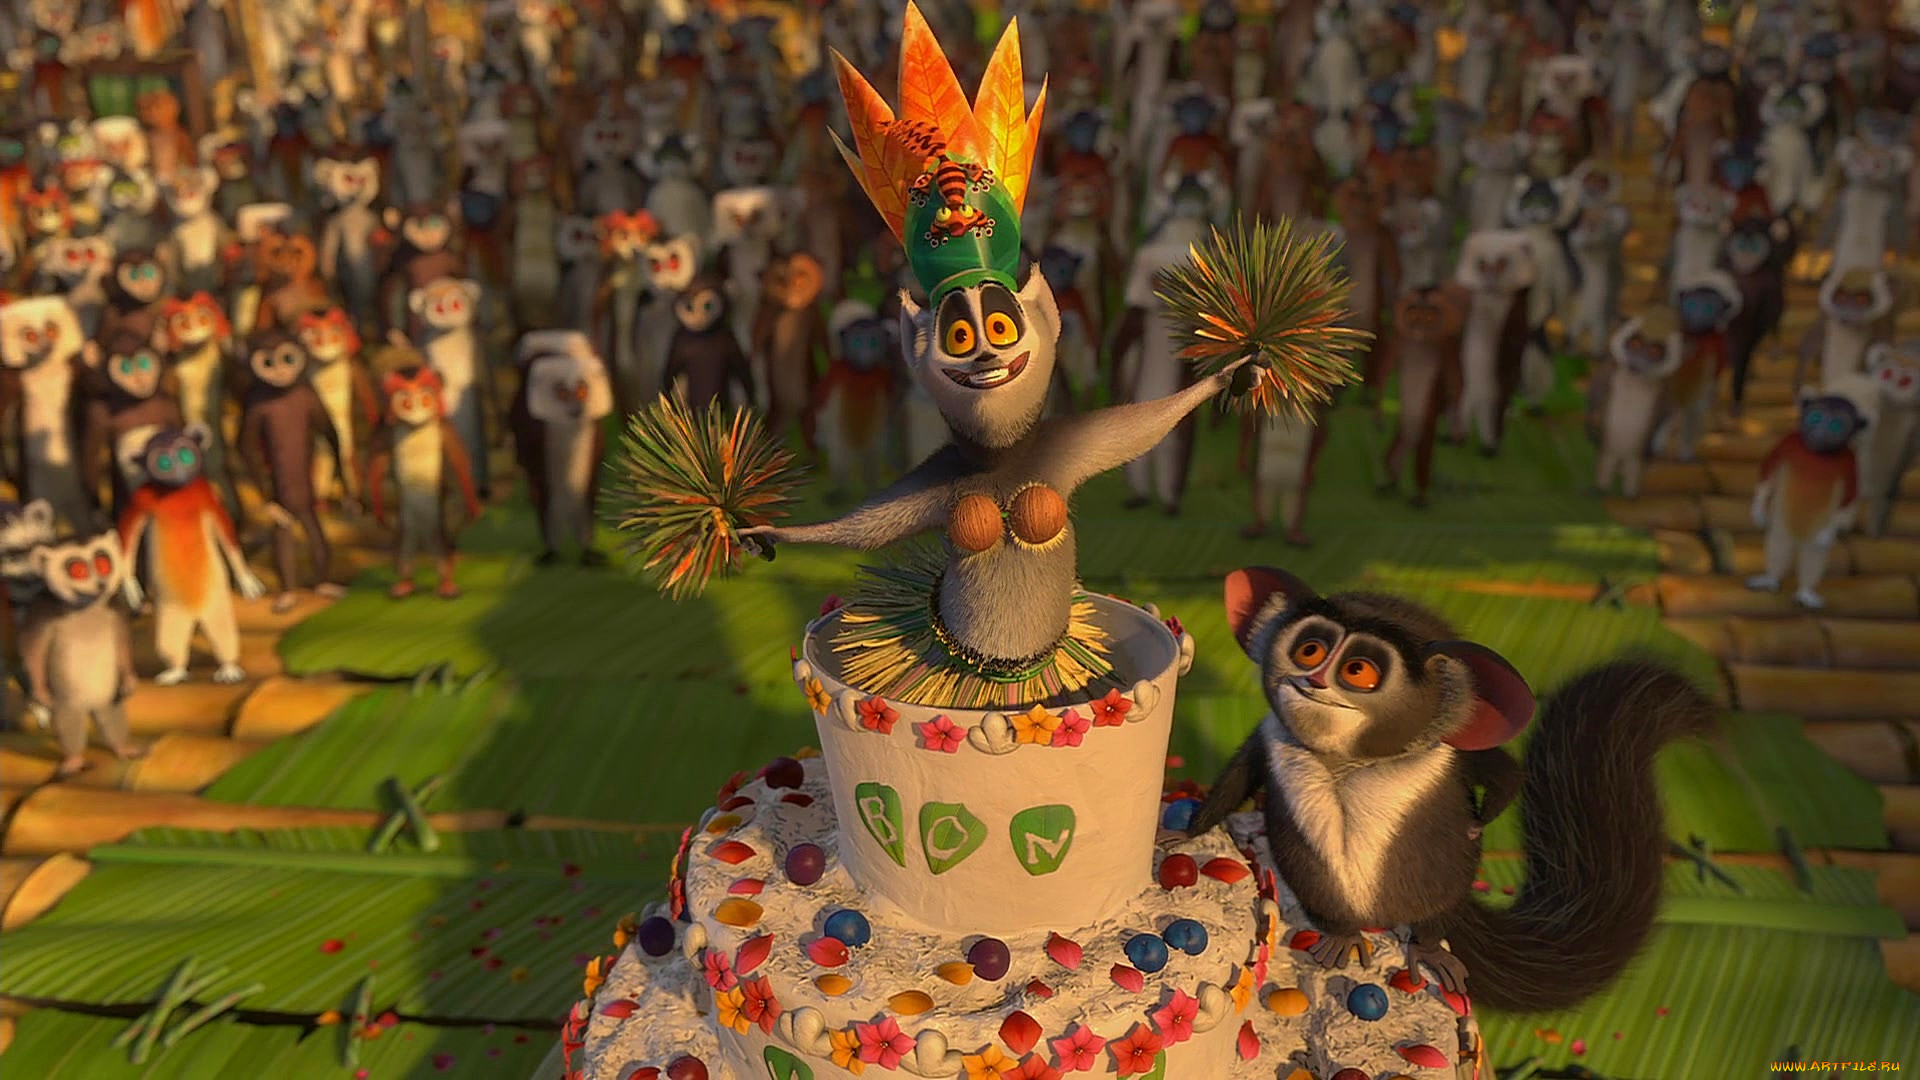 Скачать Видео Поздравление С Днем Рождения Мадагаскар